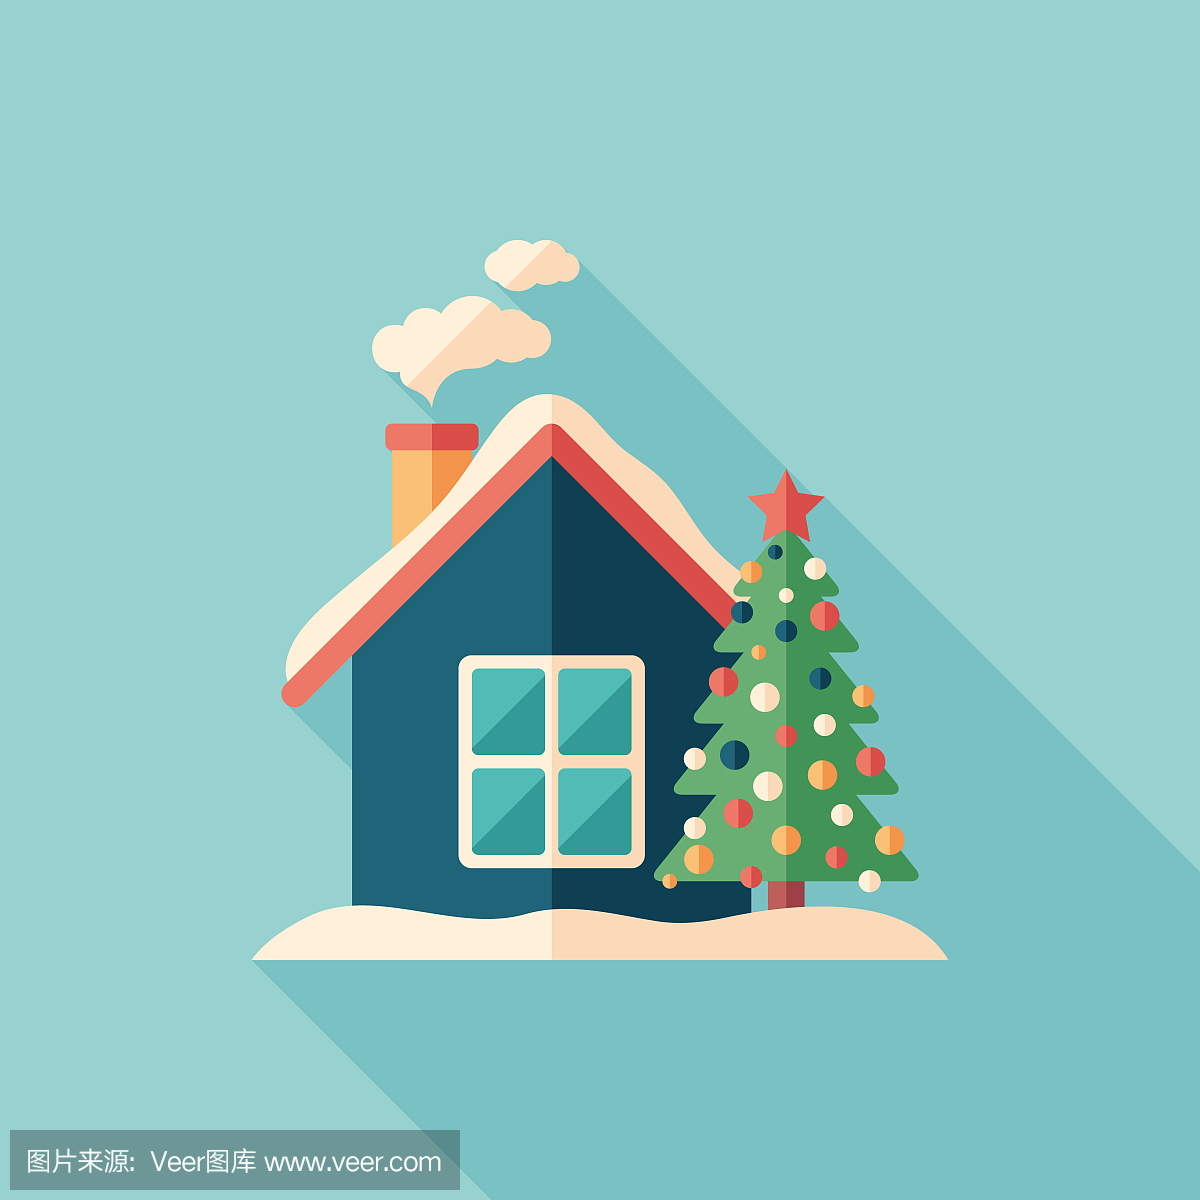 圣诞树附近的小房子平面正方形图标与长长的影